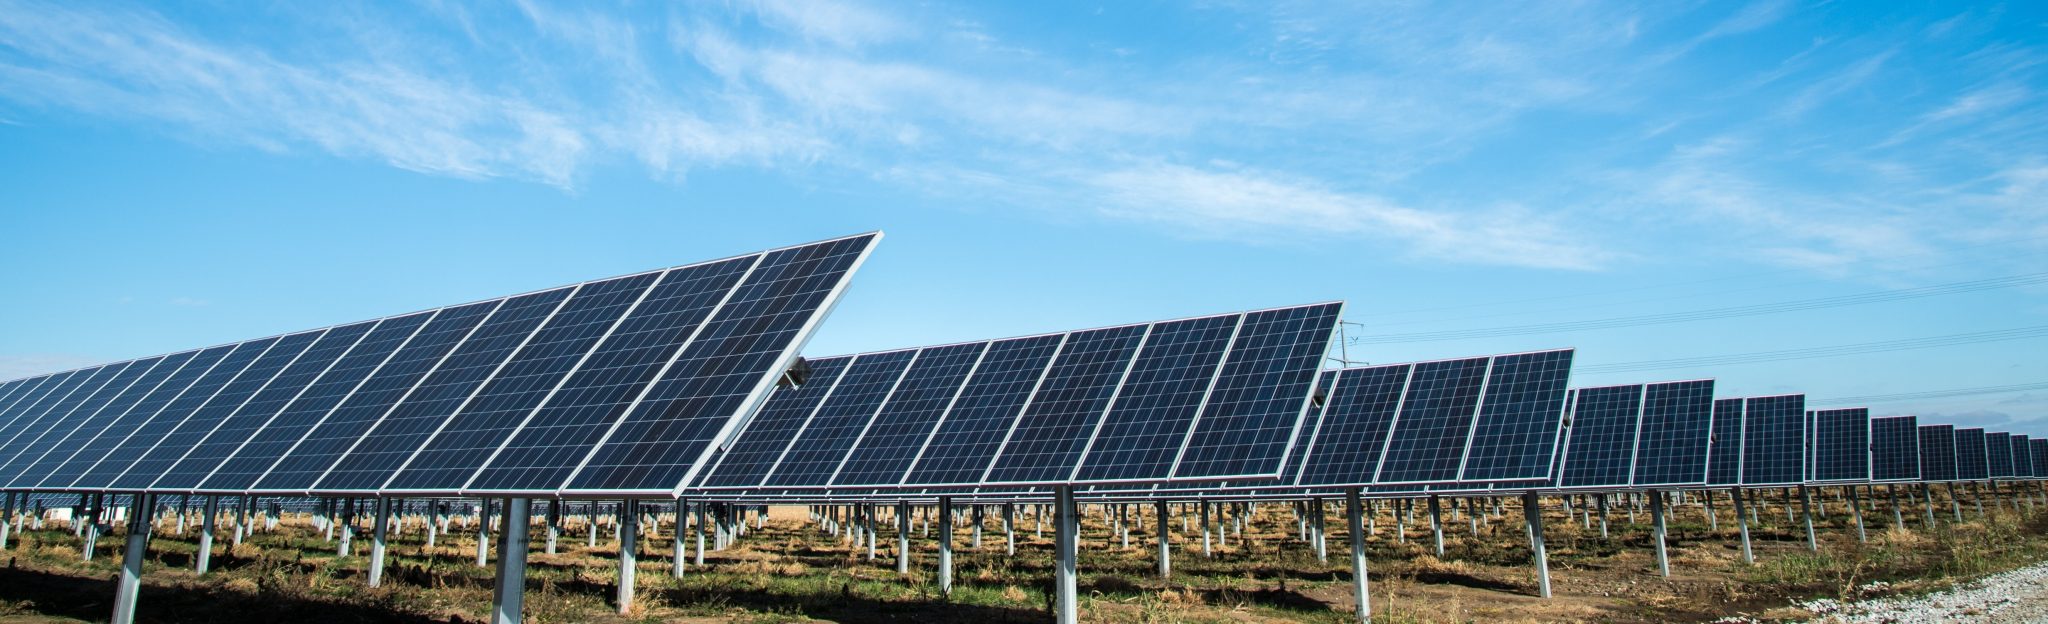 Solar-Panels-in-Field